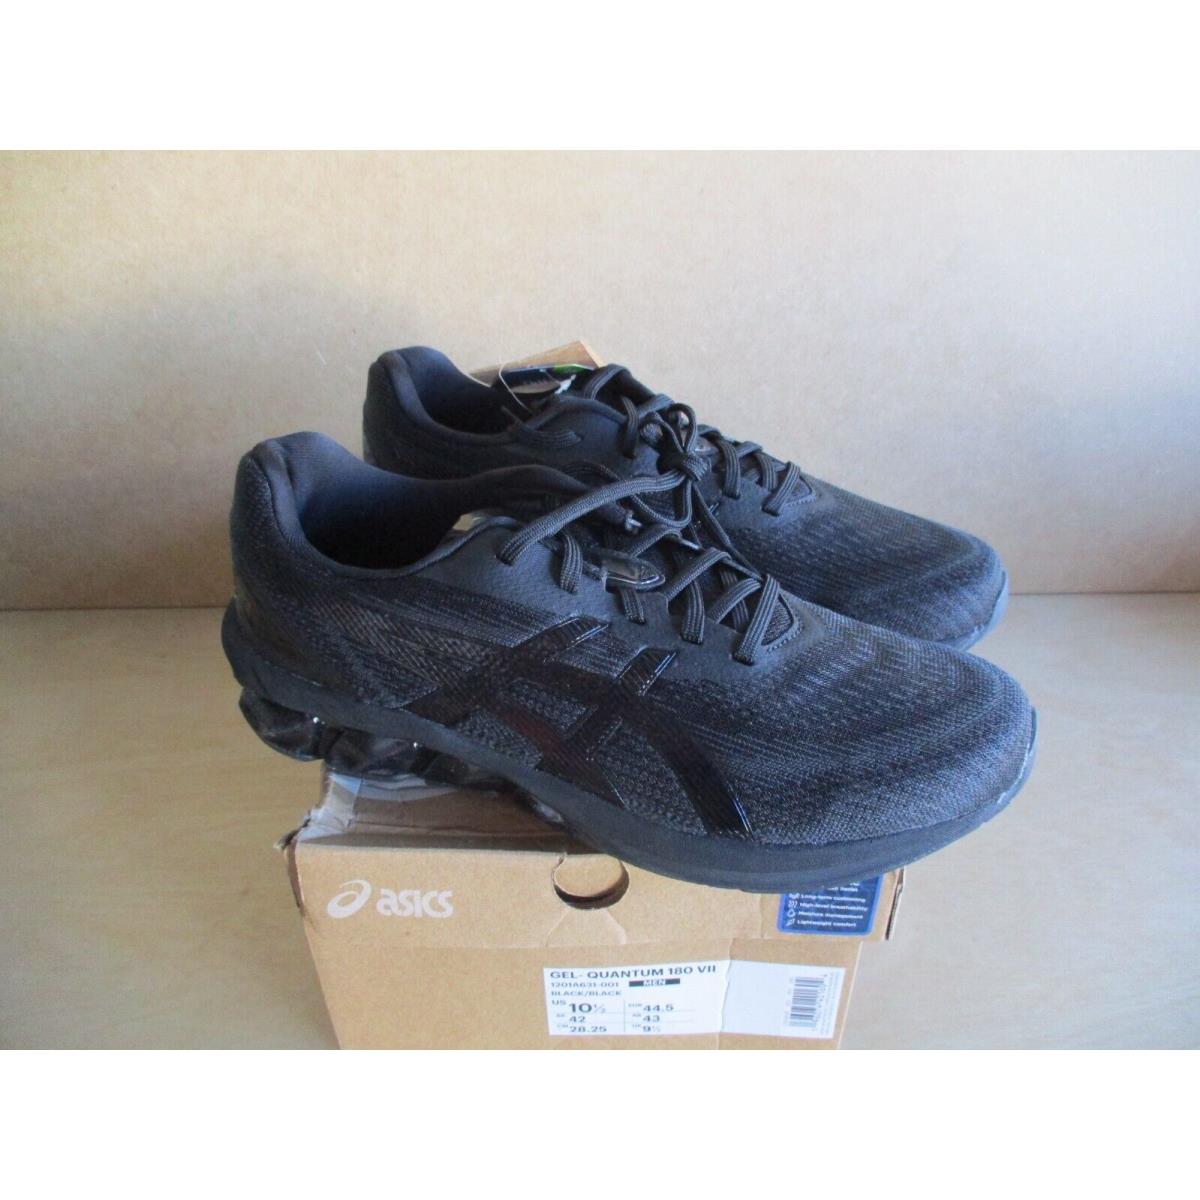 Asics Mens Gel-quantum 180 Vii Black Athletic Shoes Size 10.5 1201A631-001 - Black